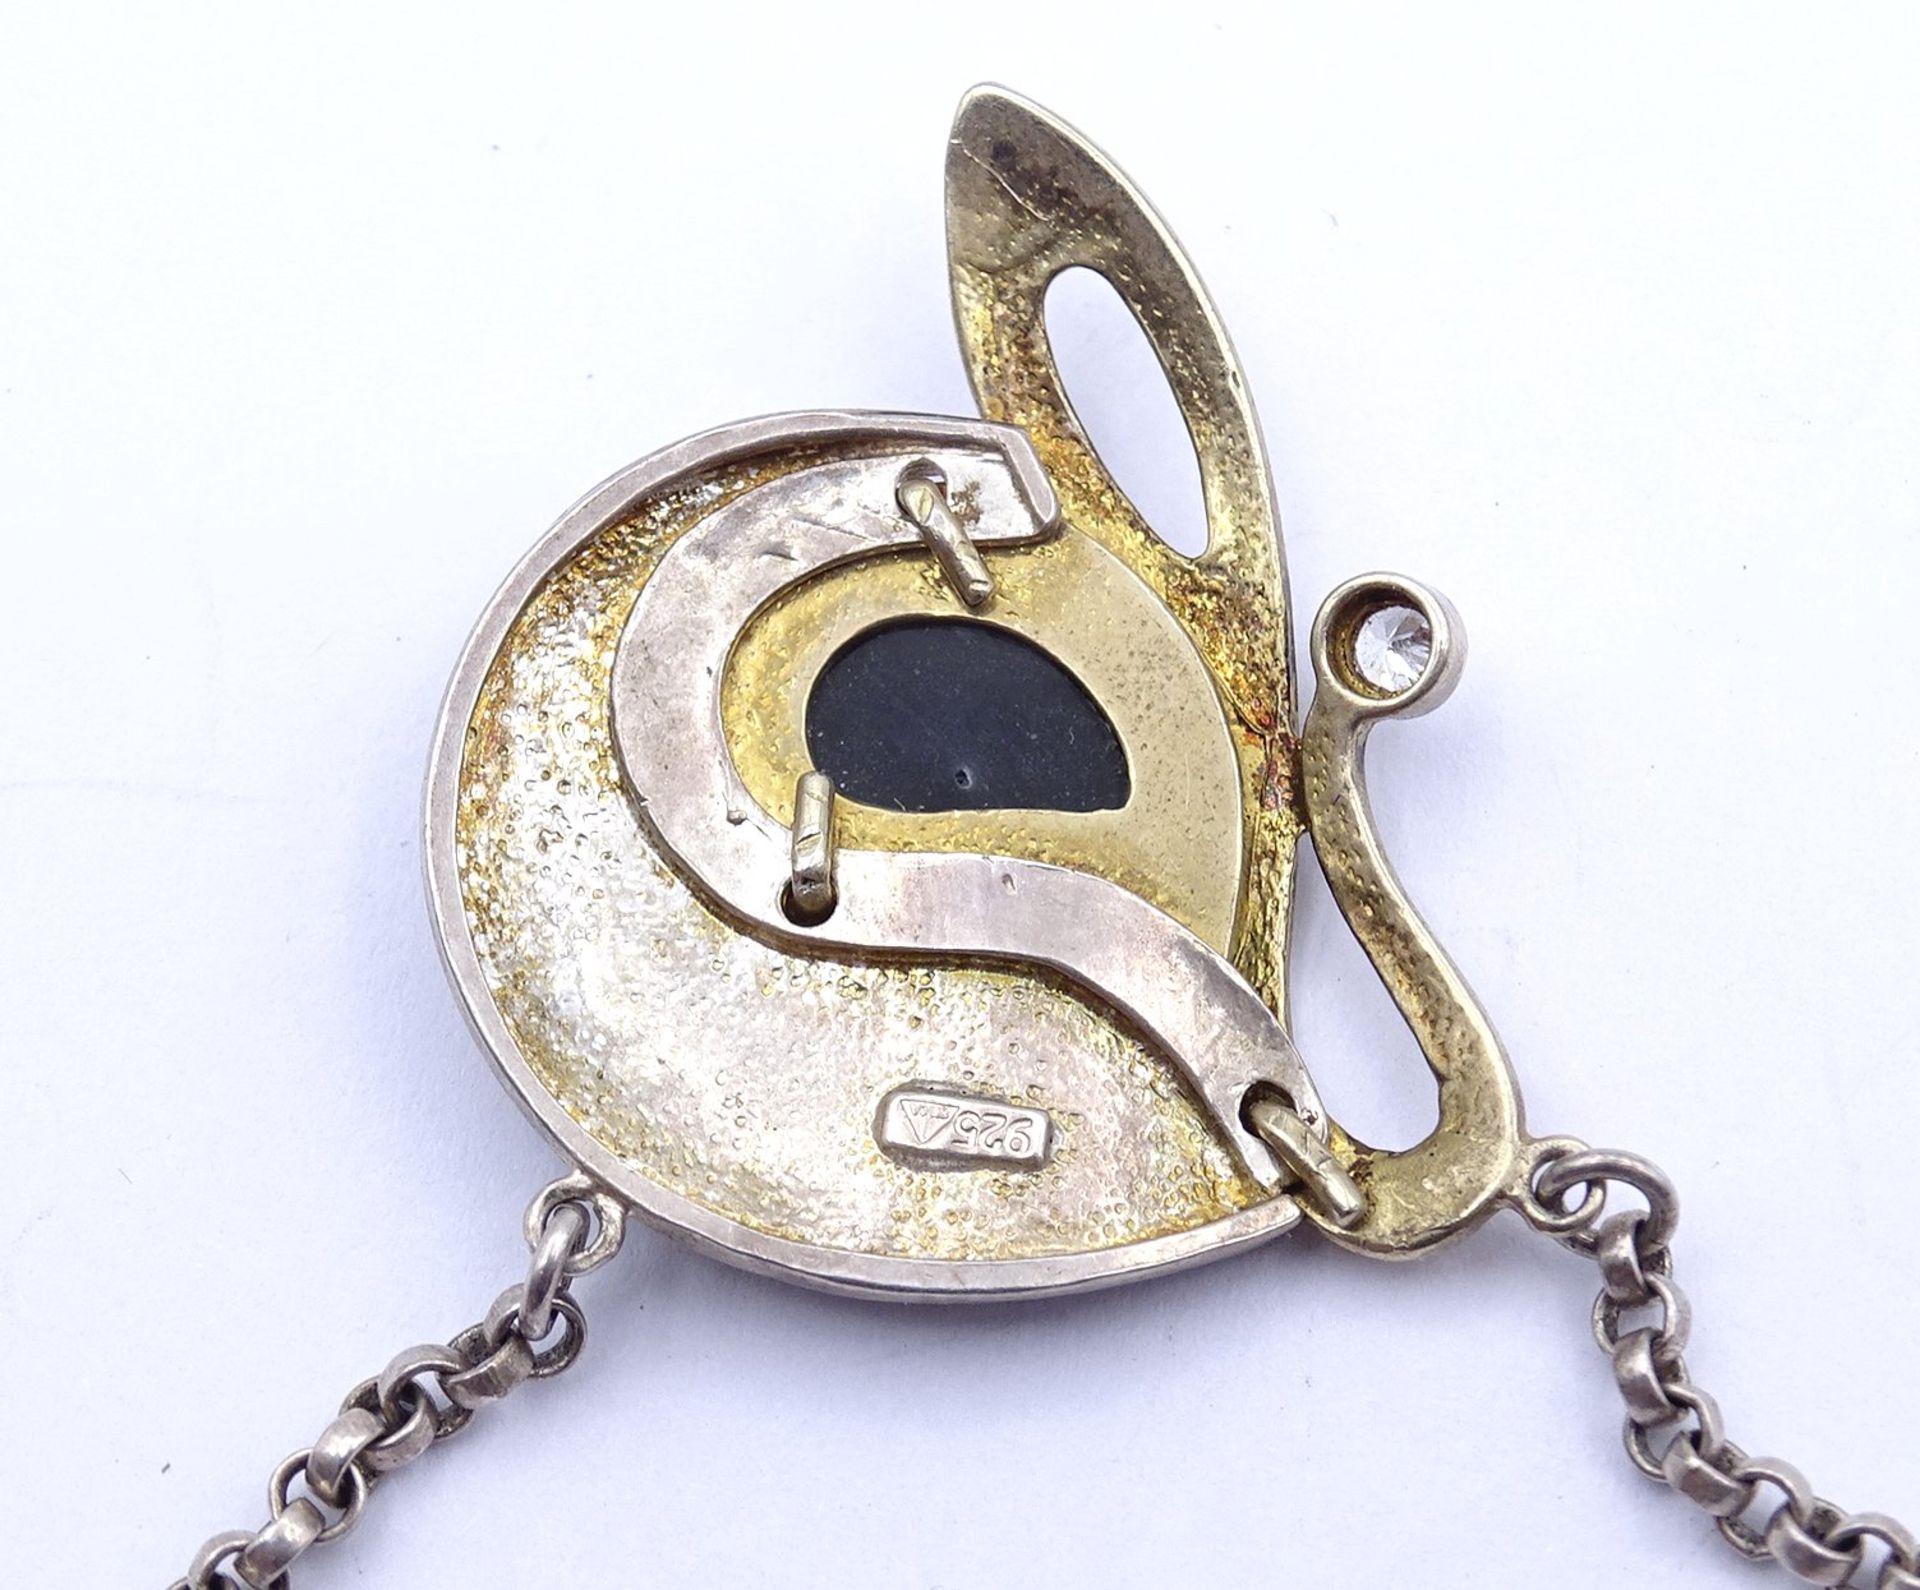 Halskette, Silber 0.925, L. 46,5cm, mit Perlmutt und einem rund facc. klaren Stein, 13,2g. - Image 4 of 4